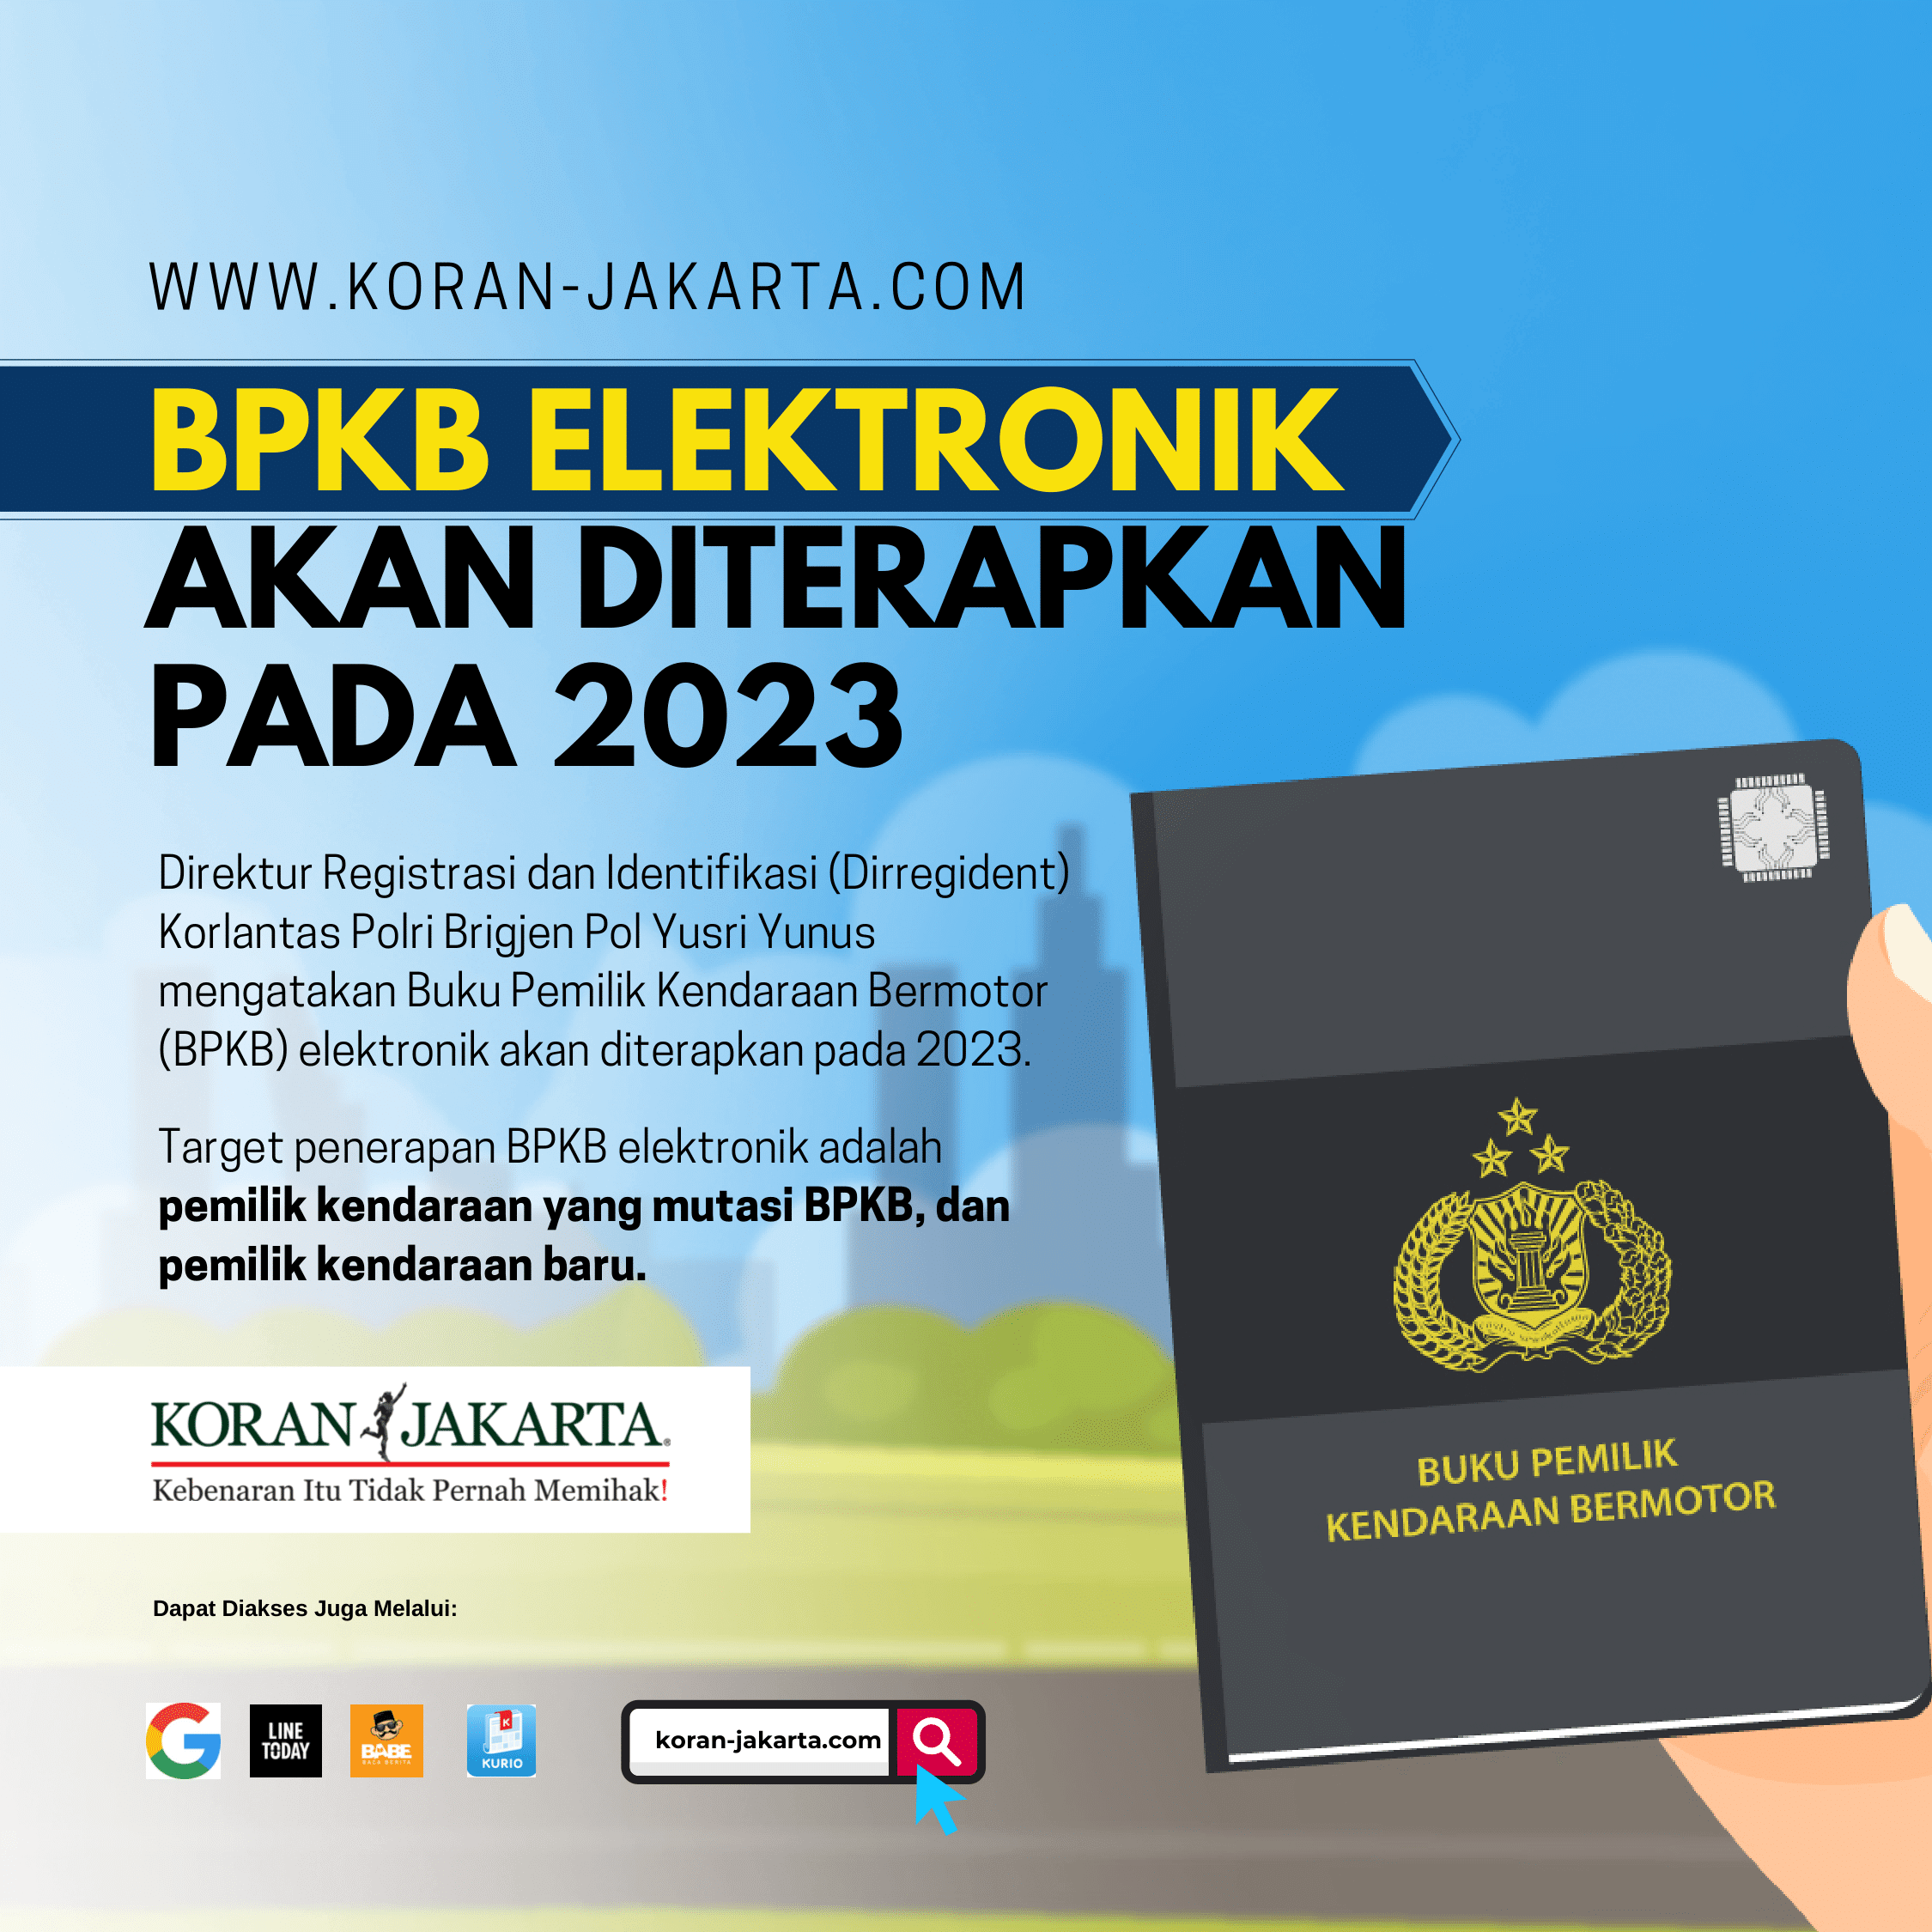 BPKB Elektronik Akan Diterapkan Pada 2023 1